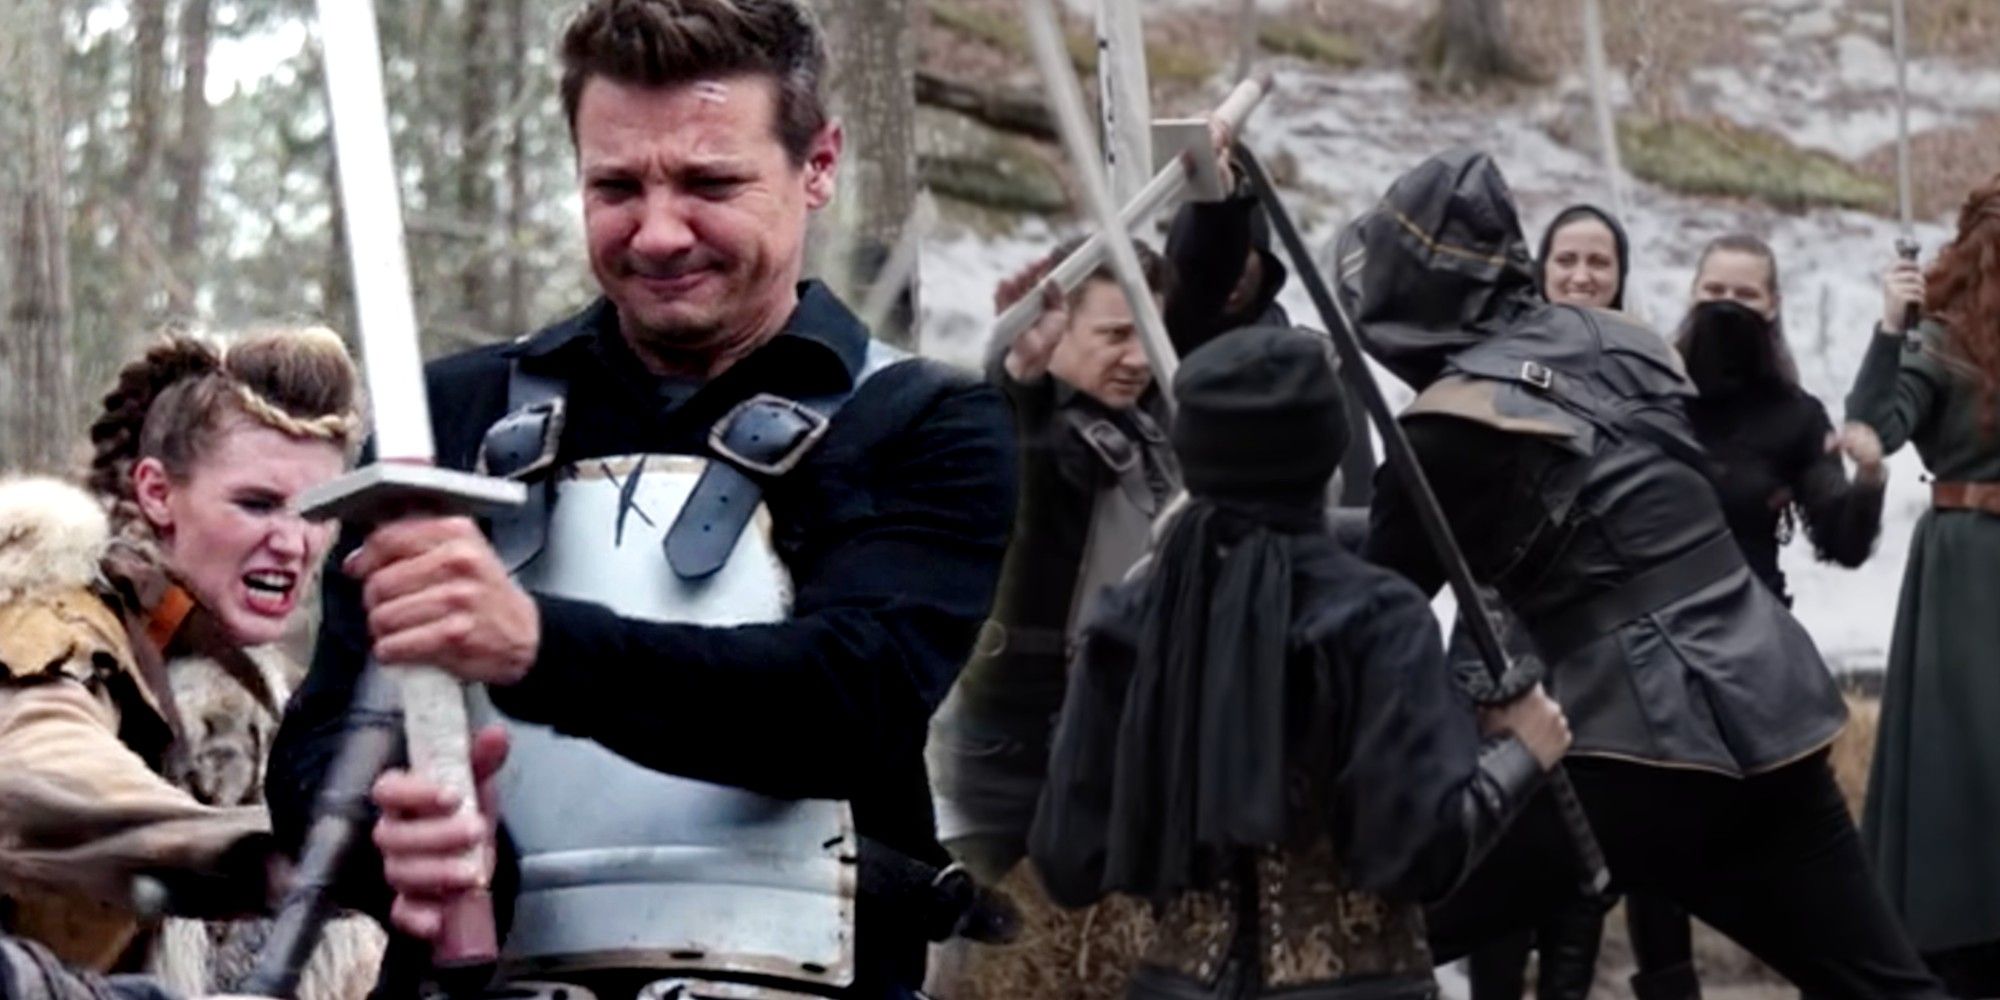 Hawkeye (Jeremy Renner) wielding a sword at a LARP battle in Hawkeye